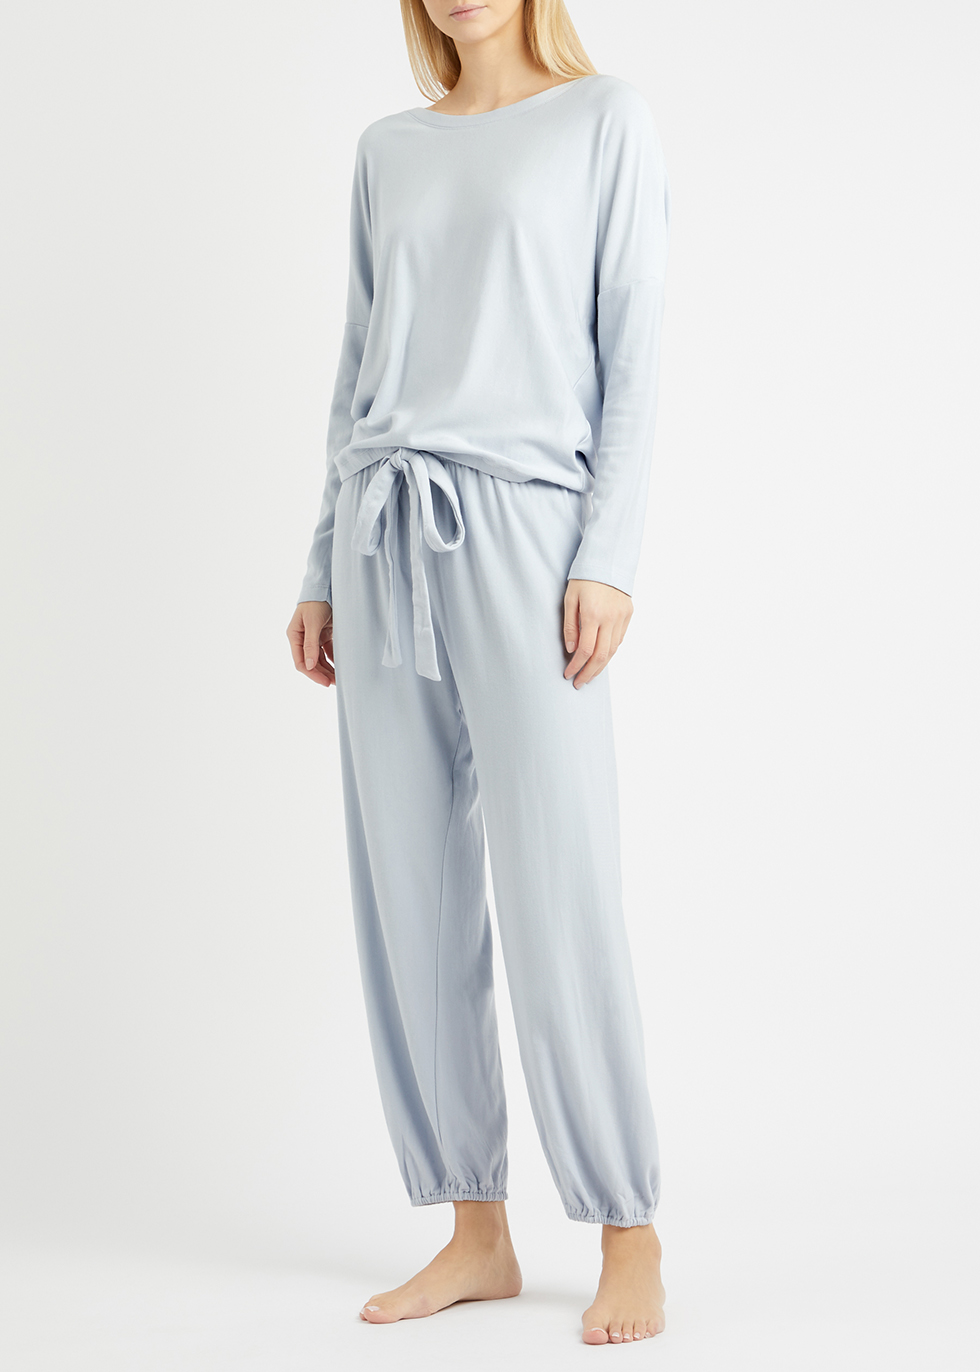 Eberjey Lady Godiva lace-trimmed stretch-jersey pyjama top 